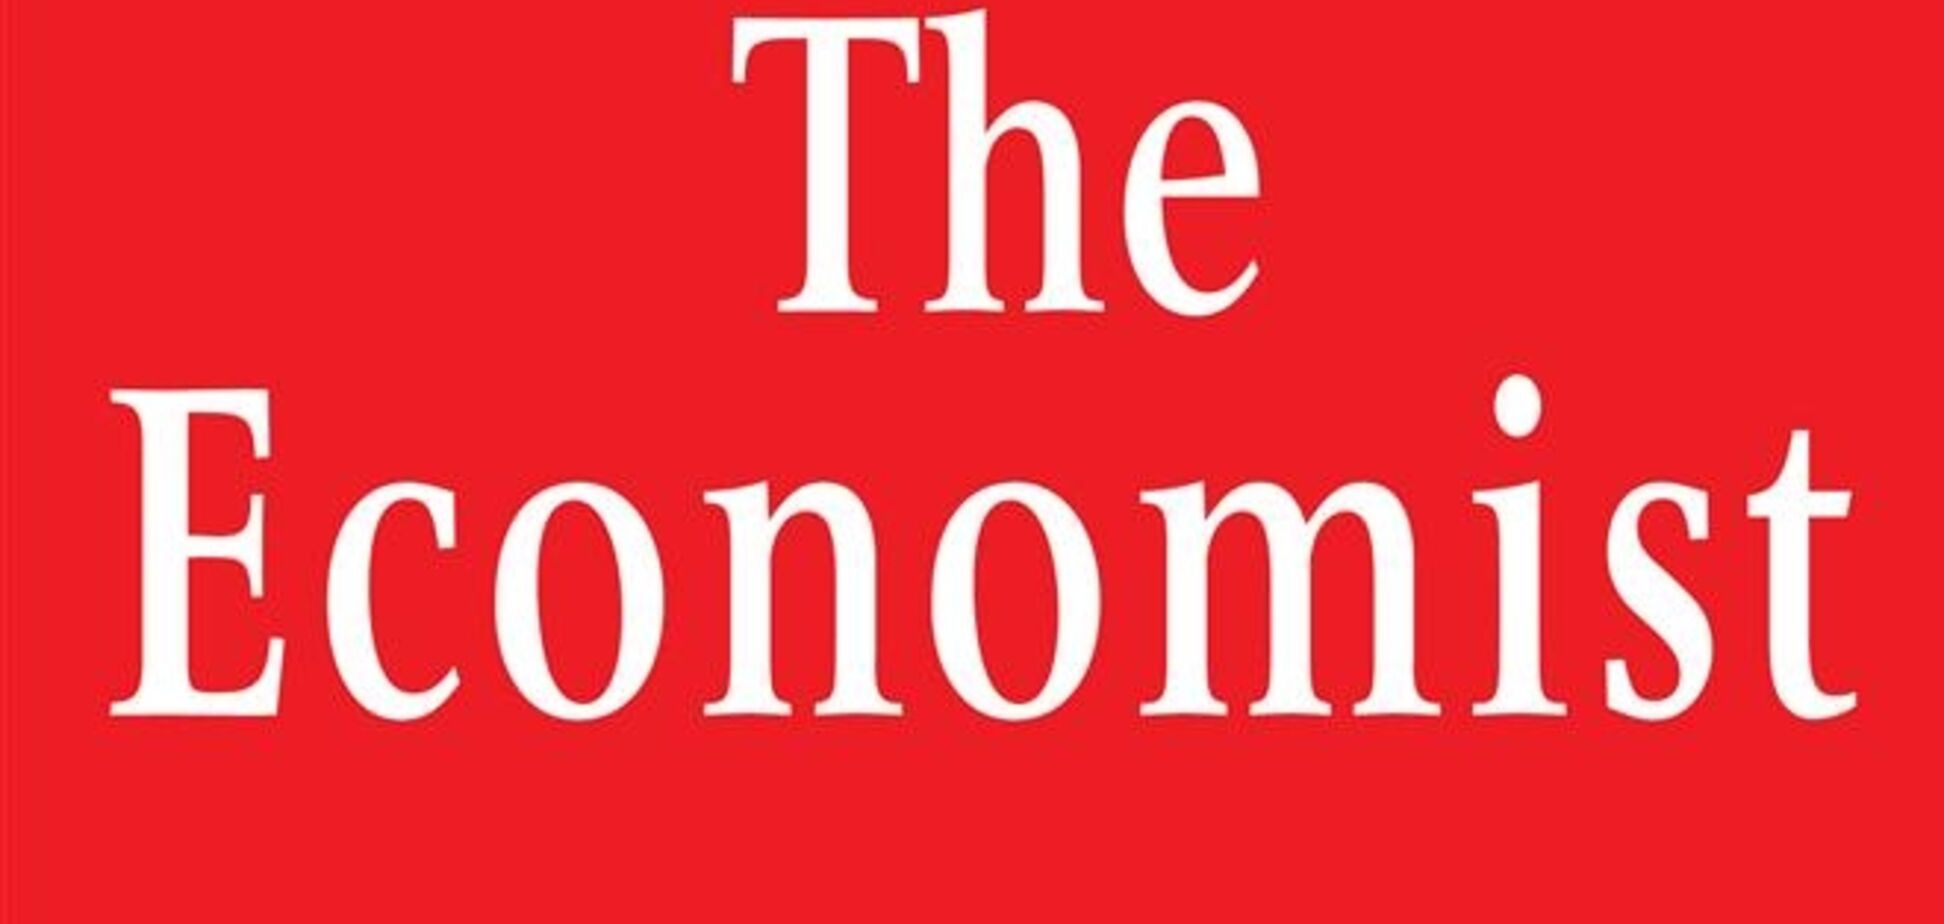 'The Economist': Янукович спробує ухилитися від зобов'язань, коли відчує, що криза пройшла